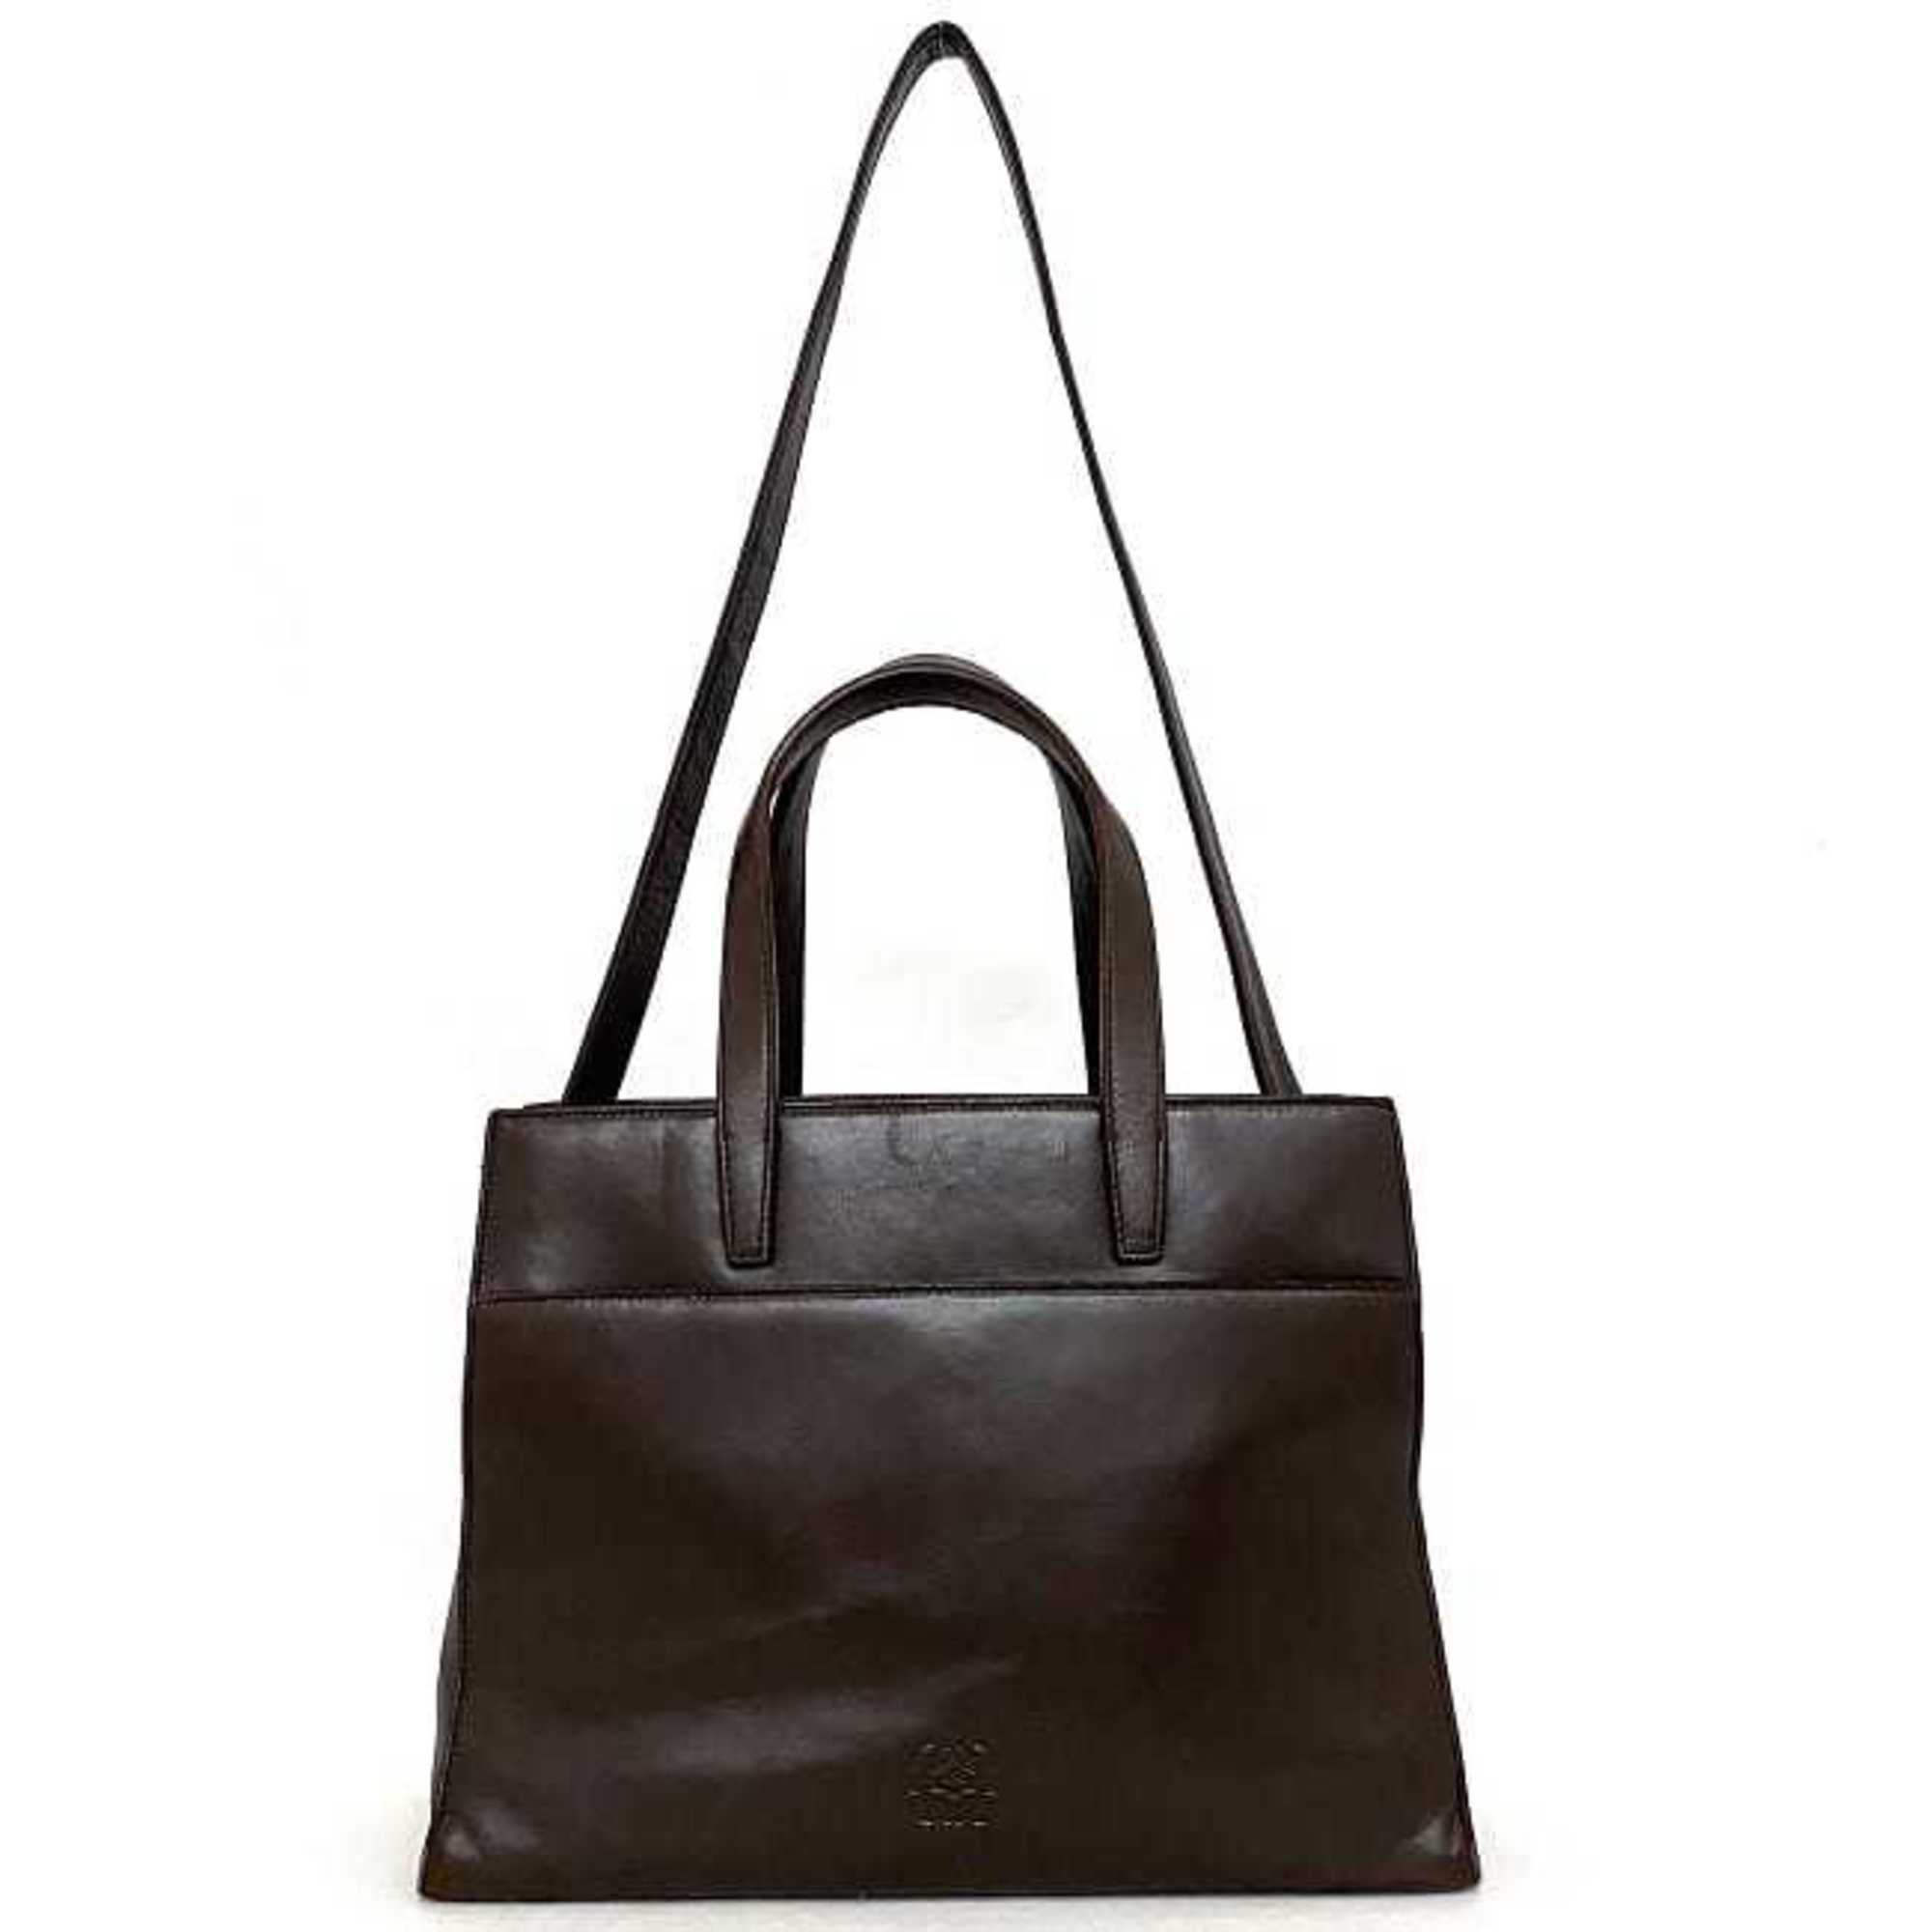 LOEWE 2way bag brown anagram handbag nappa leather tote shoulder ladies